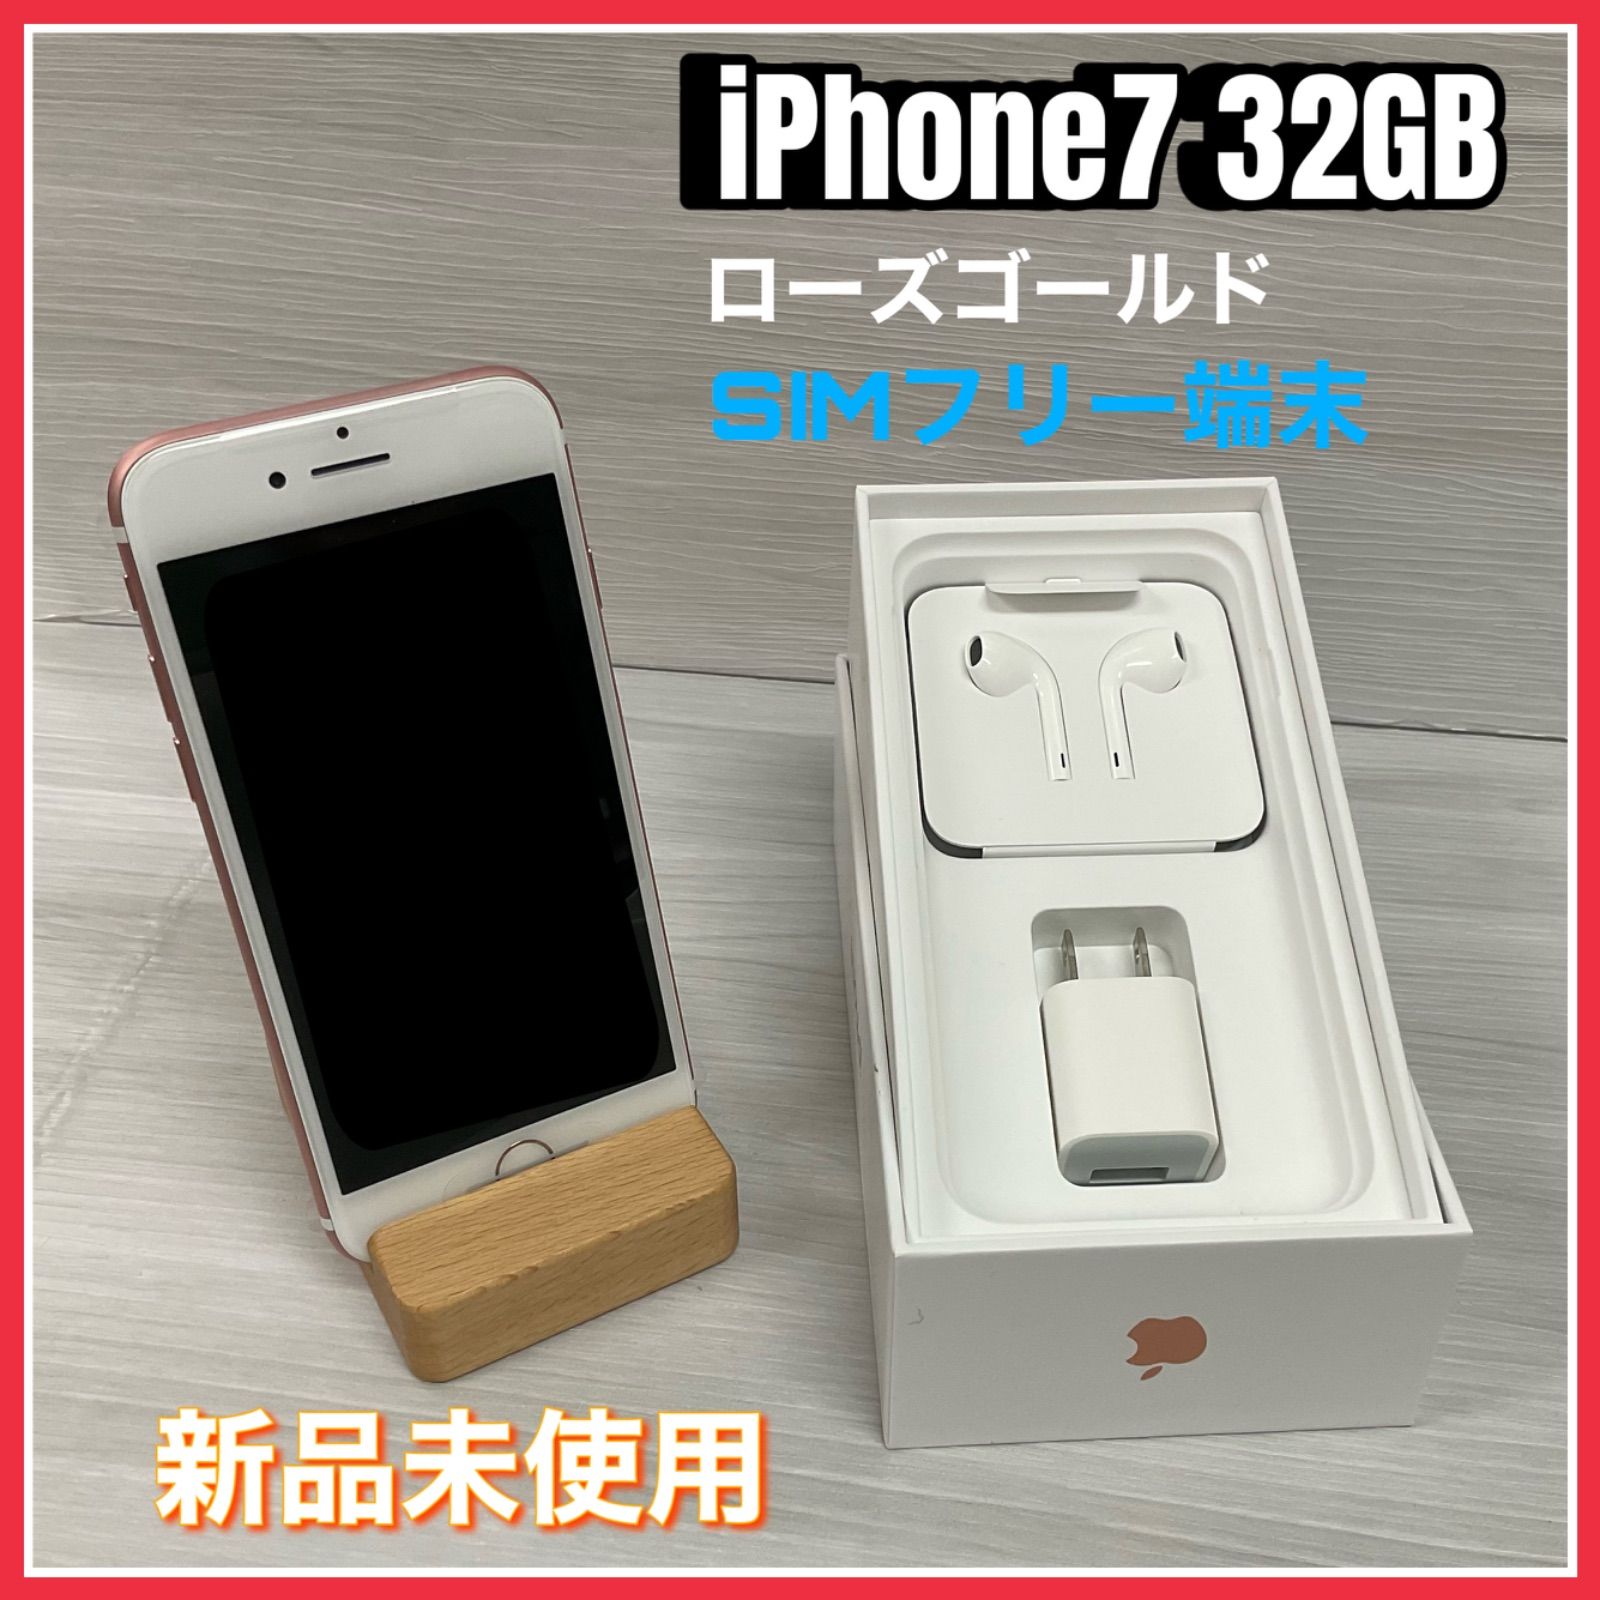 中古 iPhone7 32GB シルバー SIMロック解除済 - スマートフォン/携帯電話